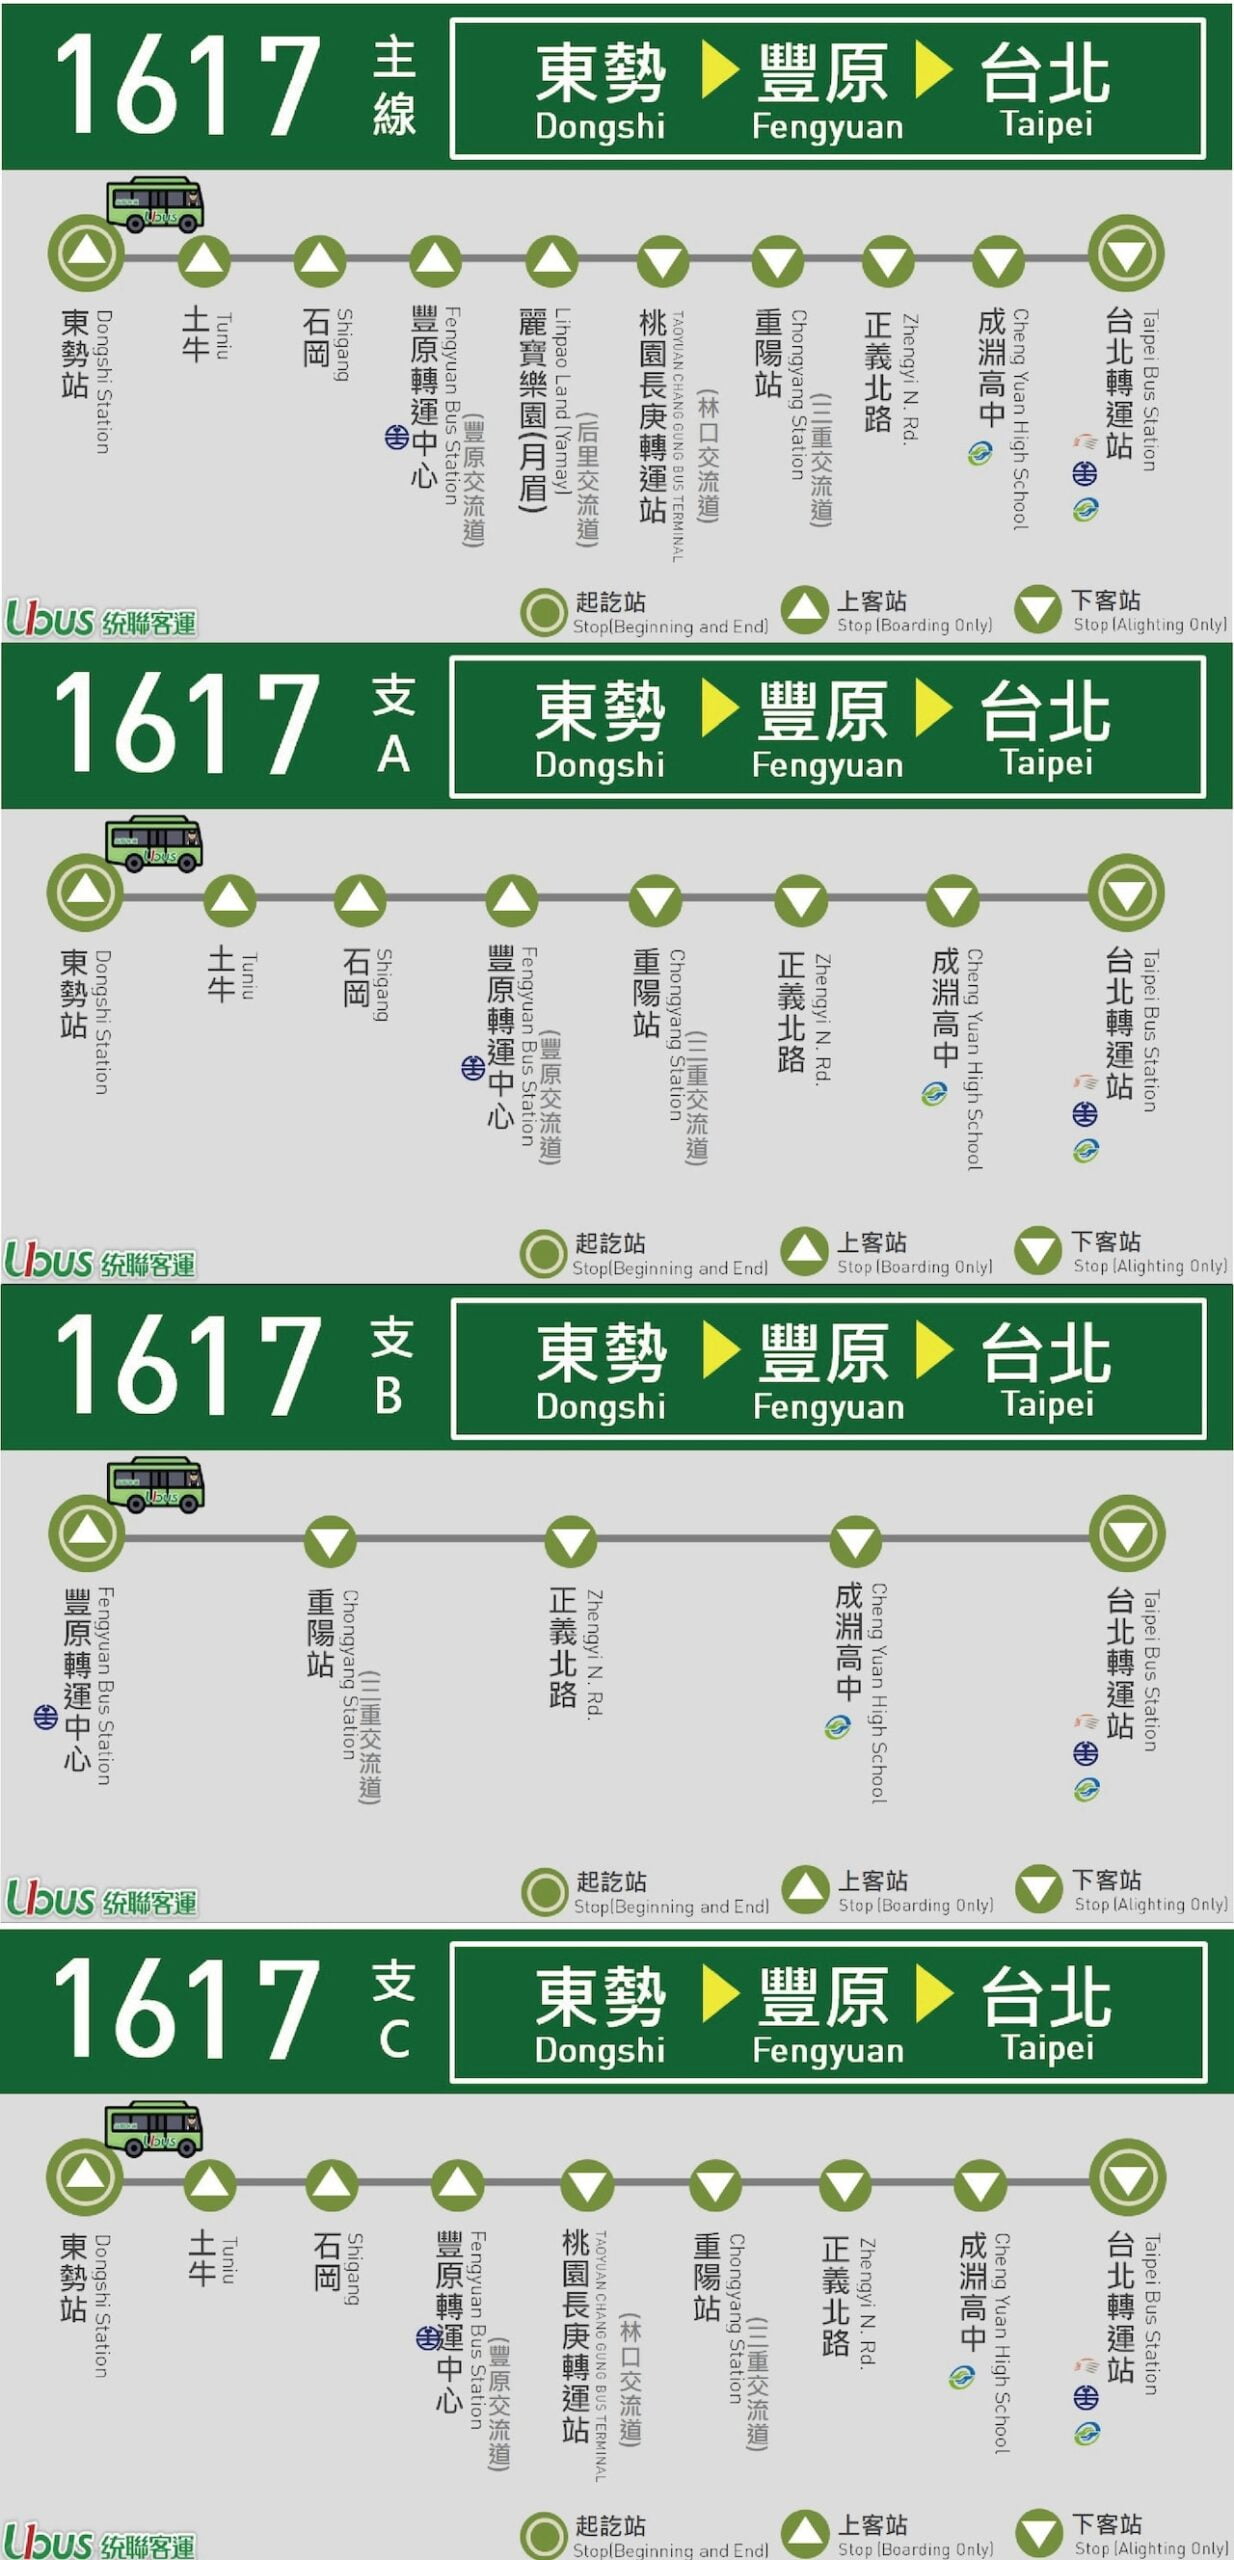 豐原到台北 - 統聯客運1617路線圖